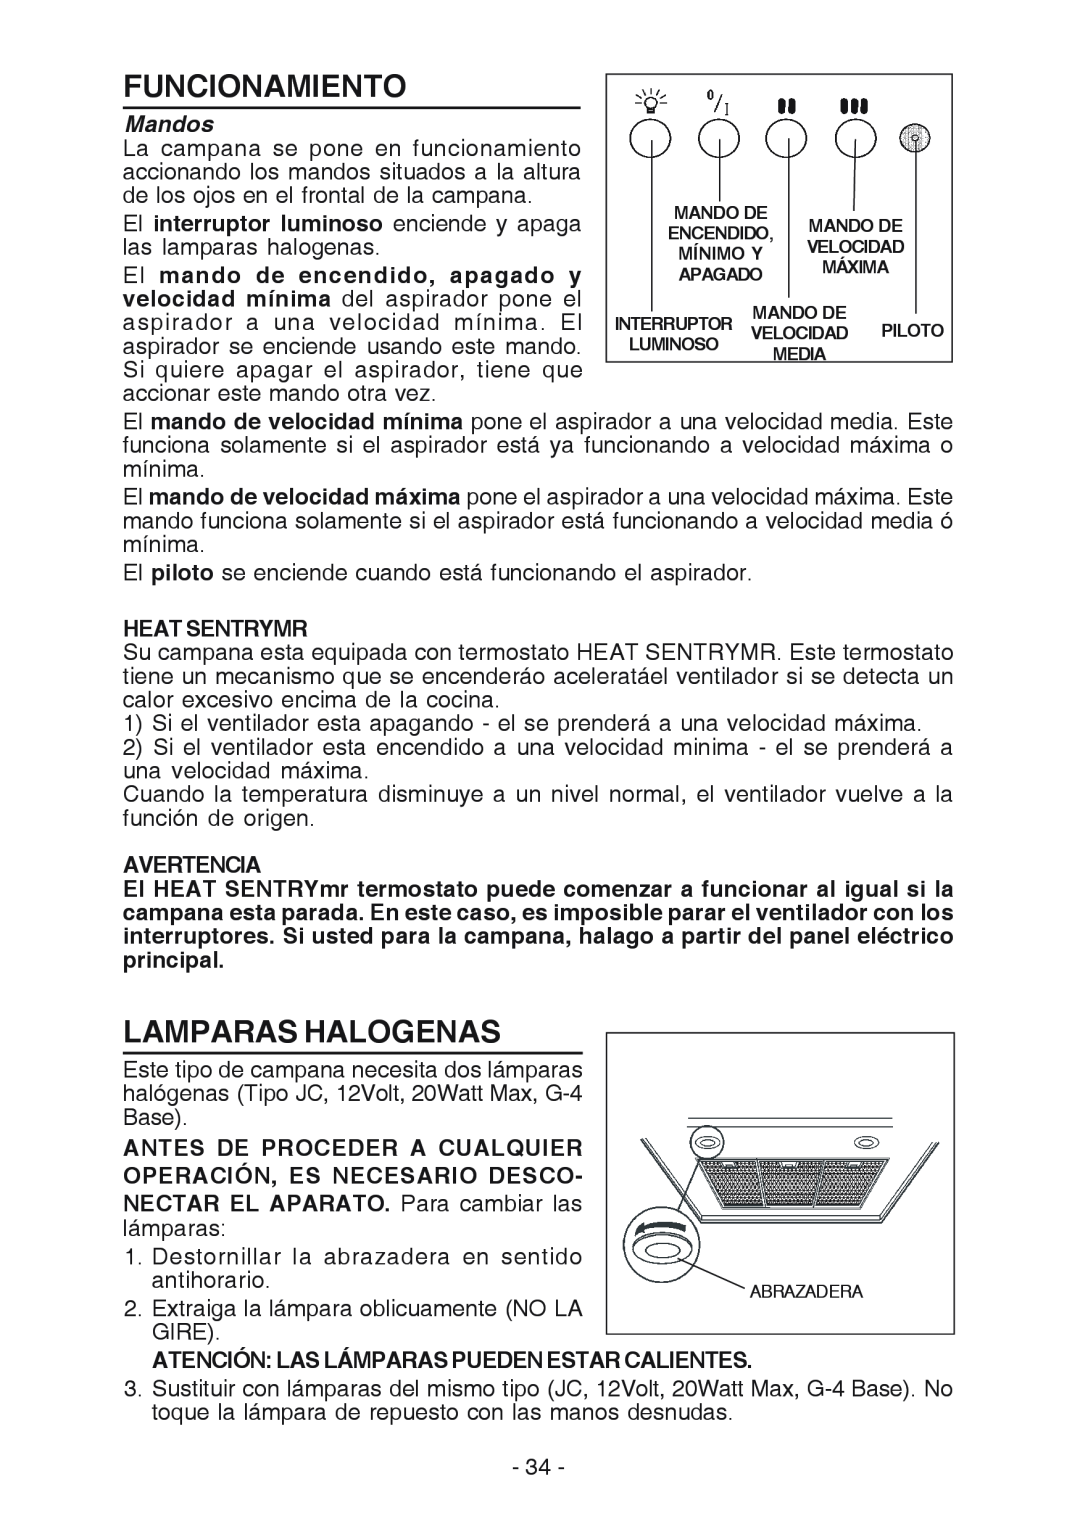 Best K3139 manual Funcionamiento, Lamparas Halogenas, Mandos 